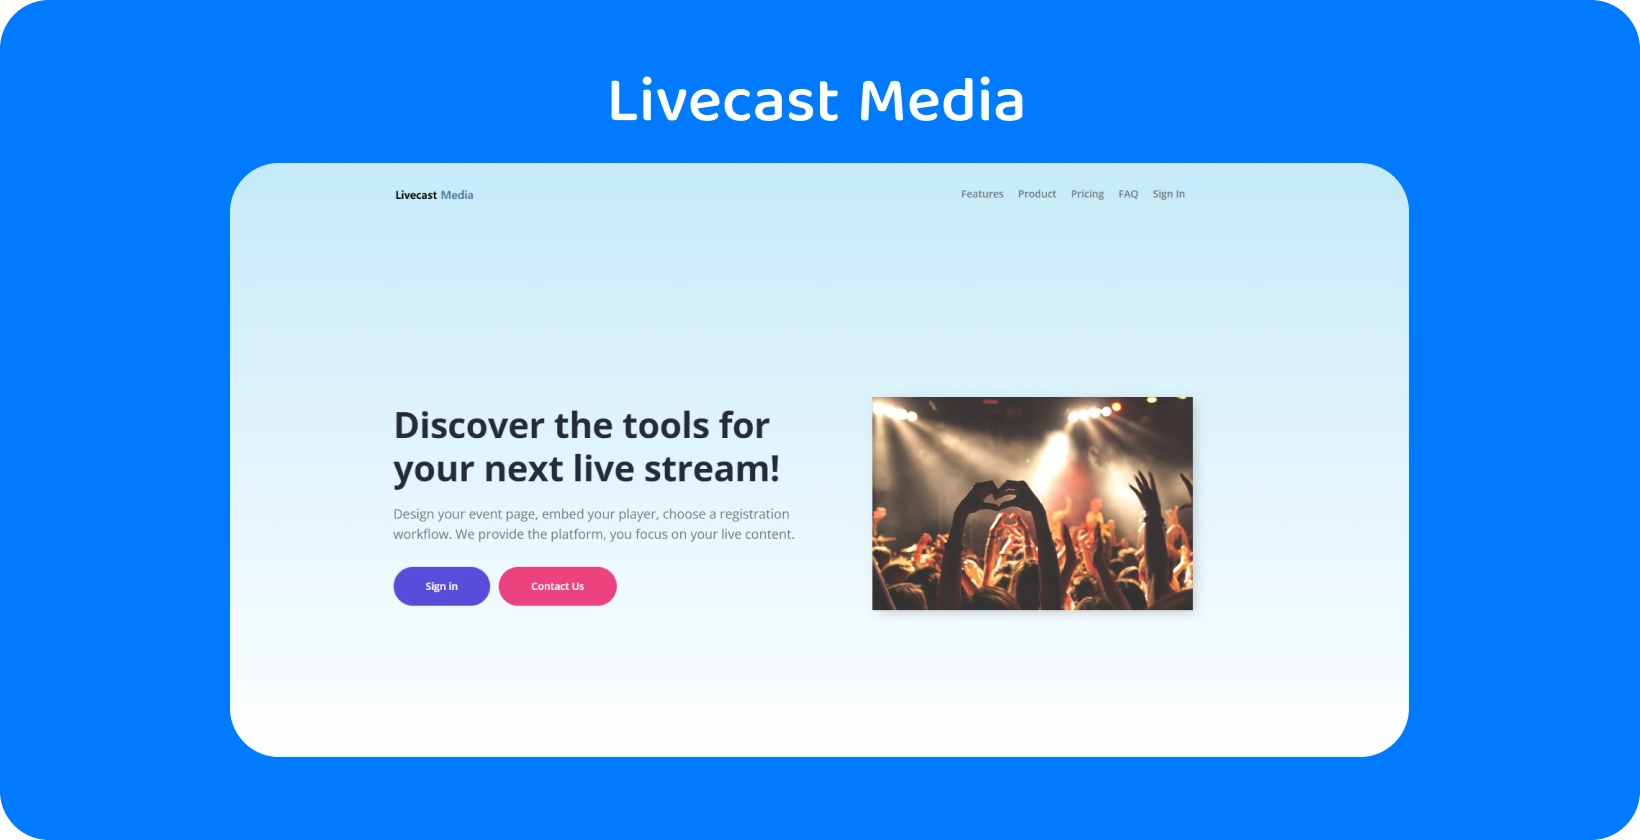 Zaujmite publikum pomocou streamovacích nástrojov spoločnosti Livecast Media, ktoré sú ideálne na vytváranie nezabudnuteľných živých udalostí.